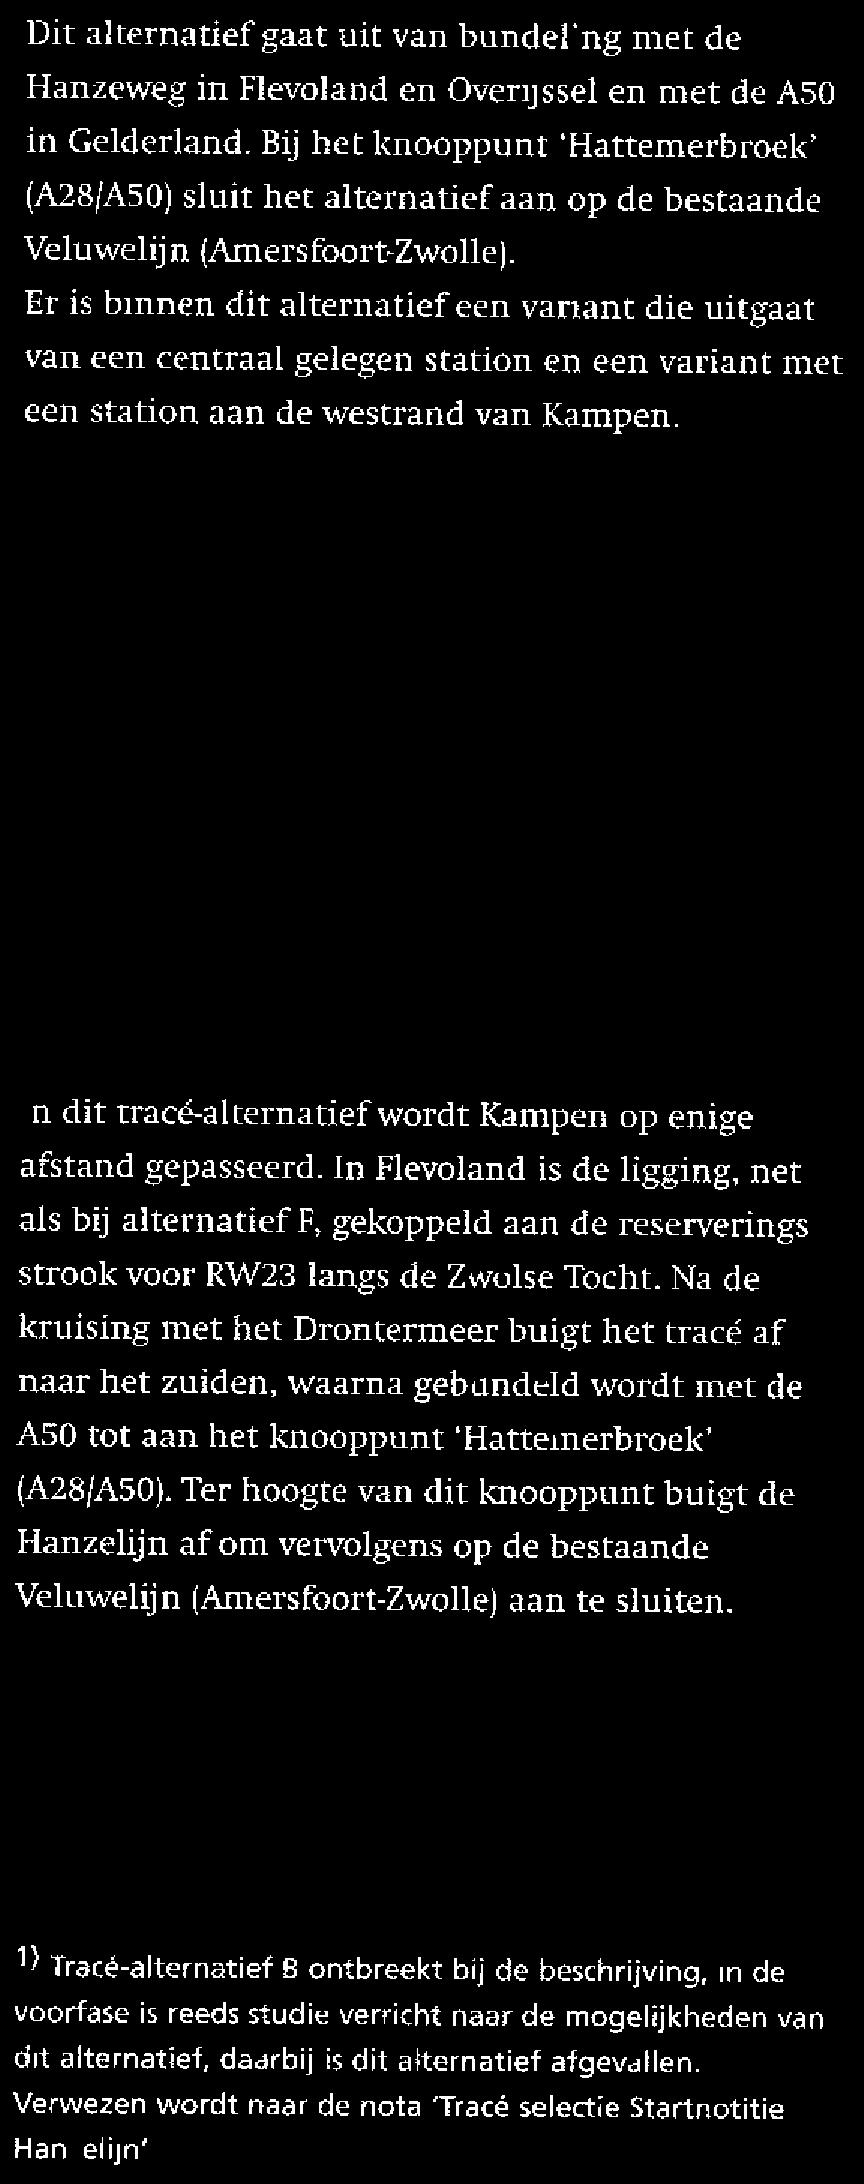 Alternatief E Dit alternatief gaat uit van bundeling met de Hanzeweg in Flevoland en Overijssel en met de ASO in Gelderland.